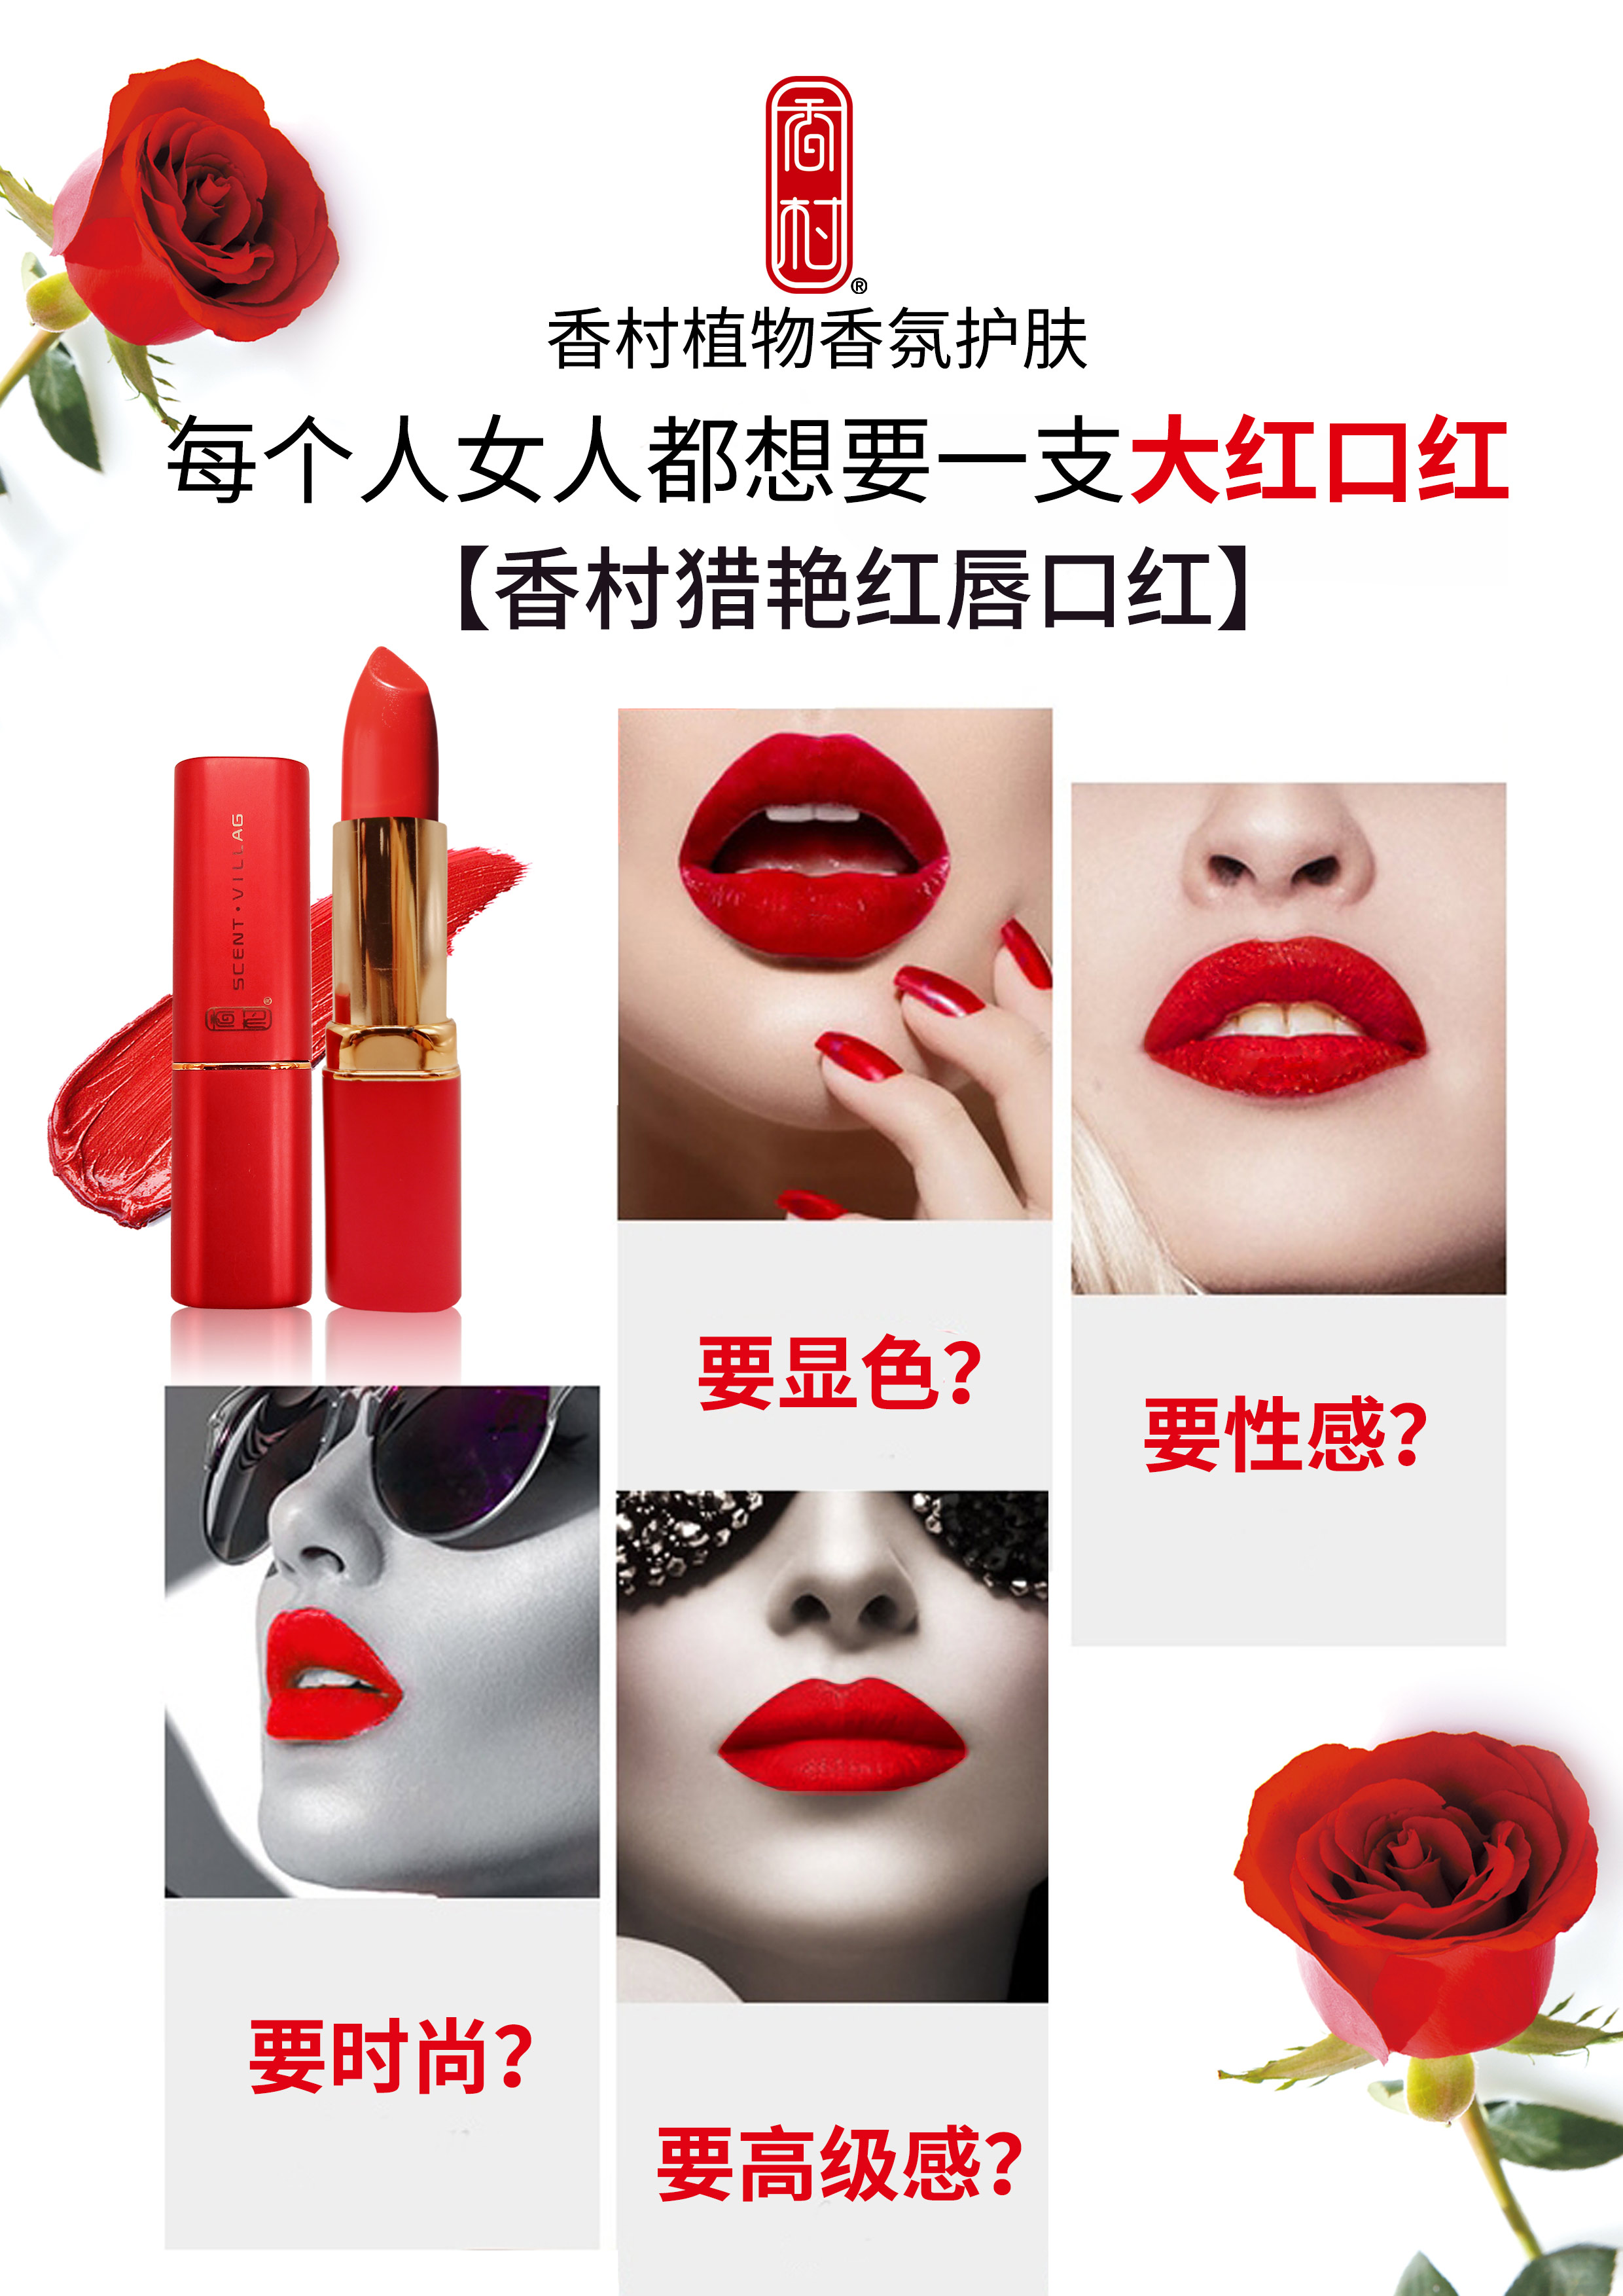 释放野性红唇诱惑口红化妆品产品宣传海报图片下载 - 觅知网